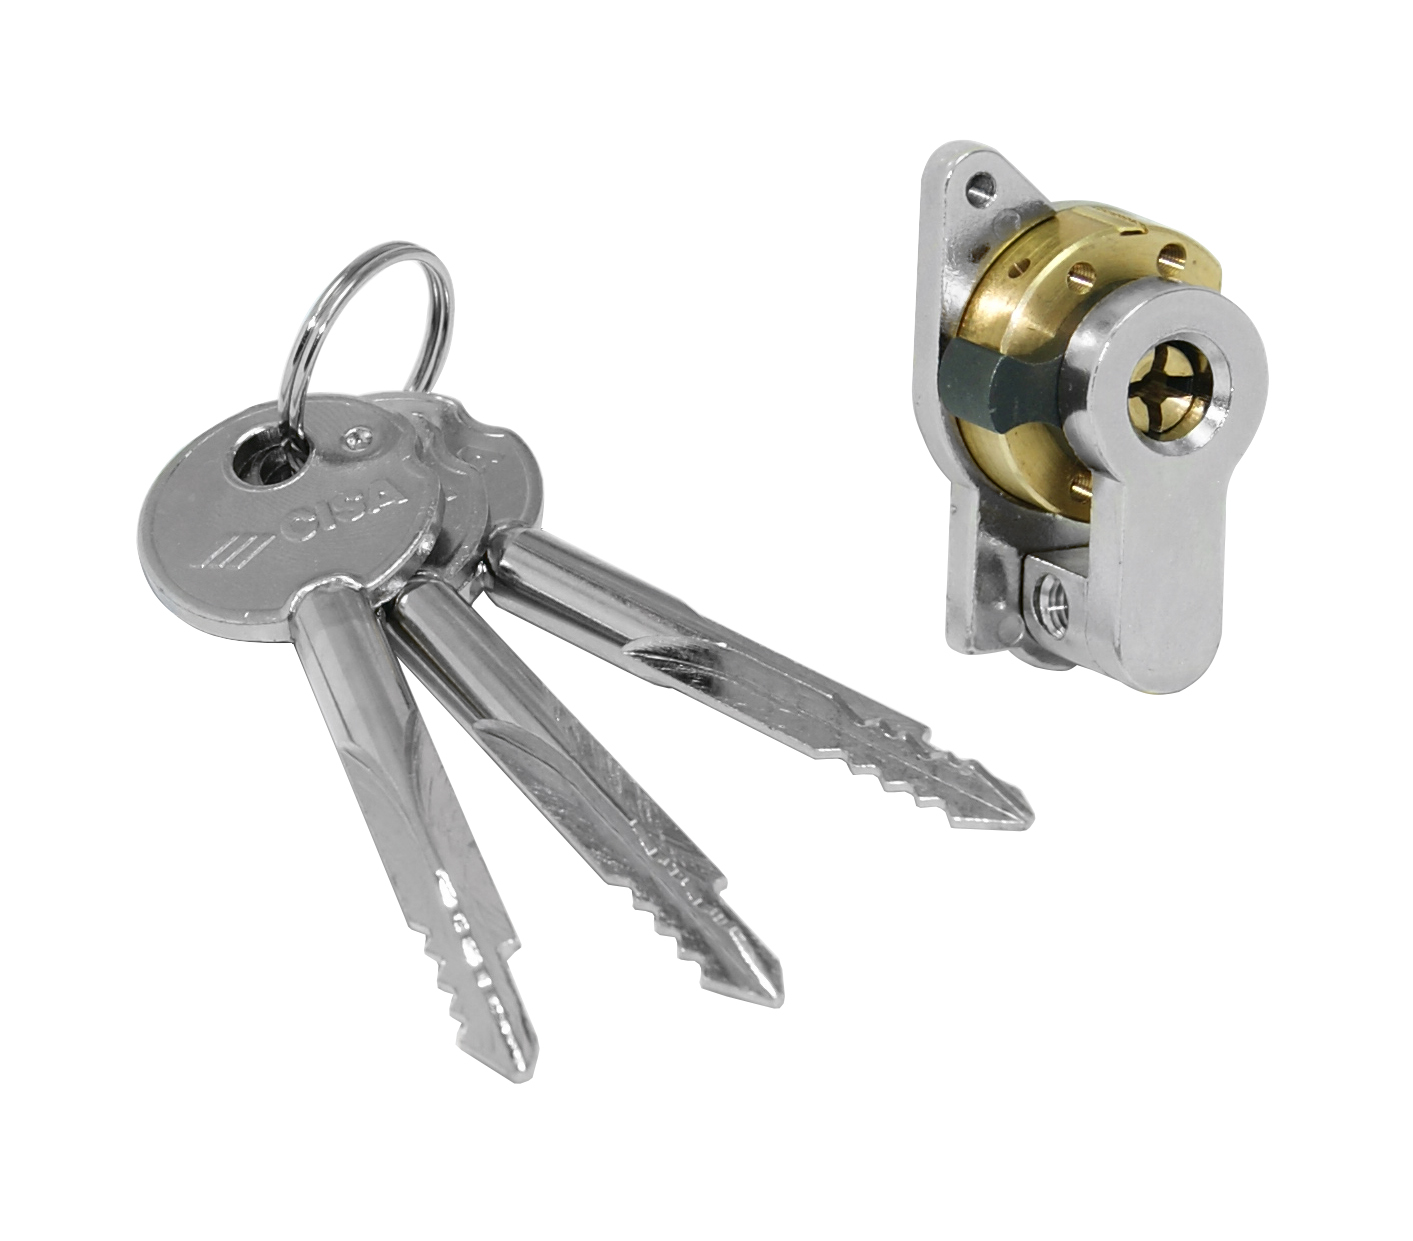 Cilindro chiave a spillo c/adattatore 3 chiavi